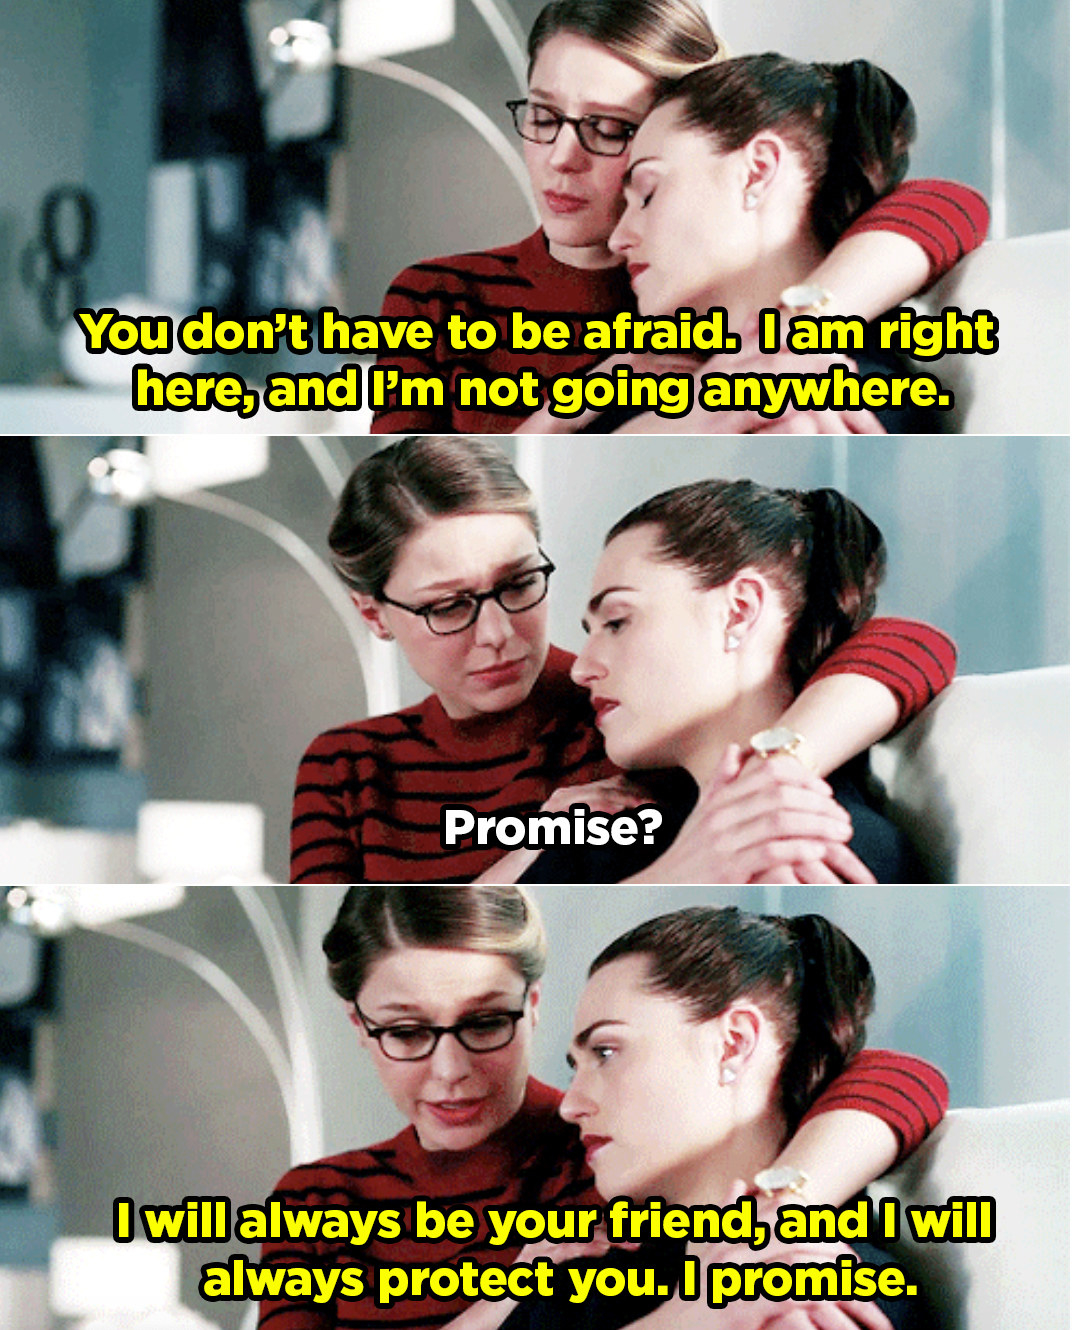 卡拉承诺莉娜,她将永远保护她。